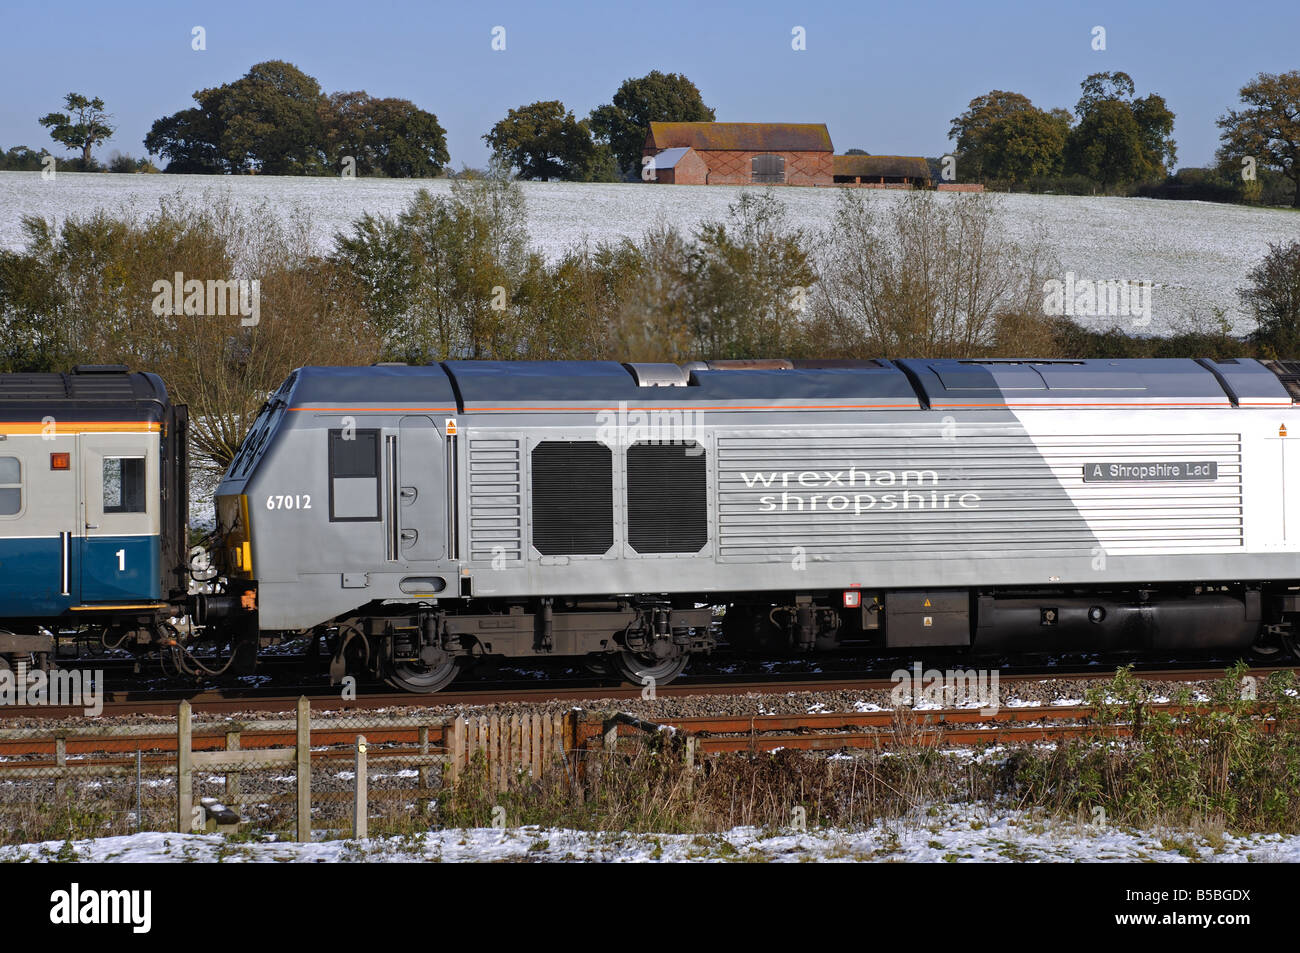 Wrexham and Shropshire Railway train, snowy, Warwickshire, UK Stock Photo